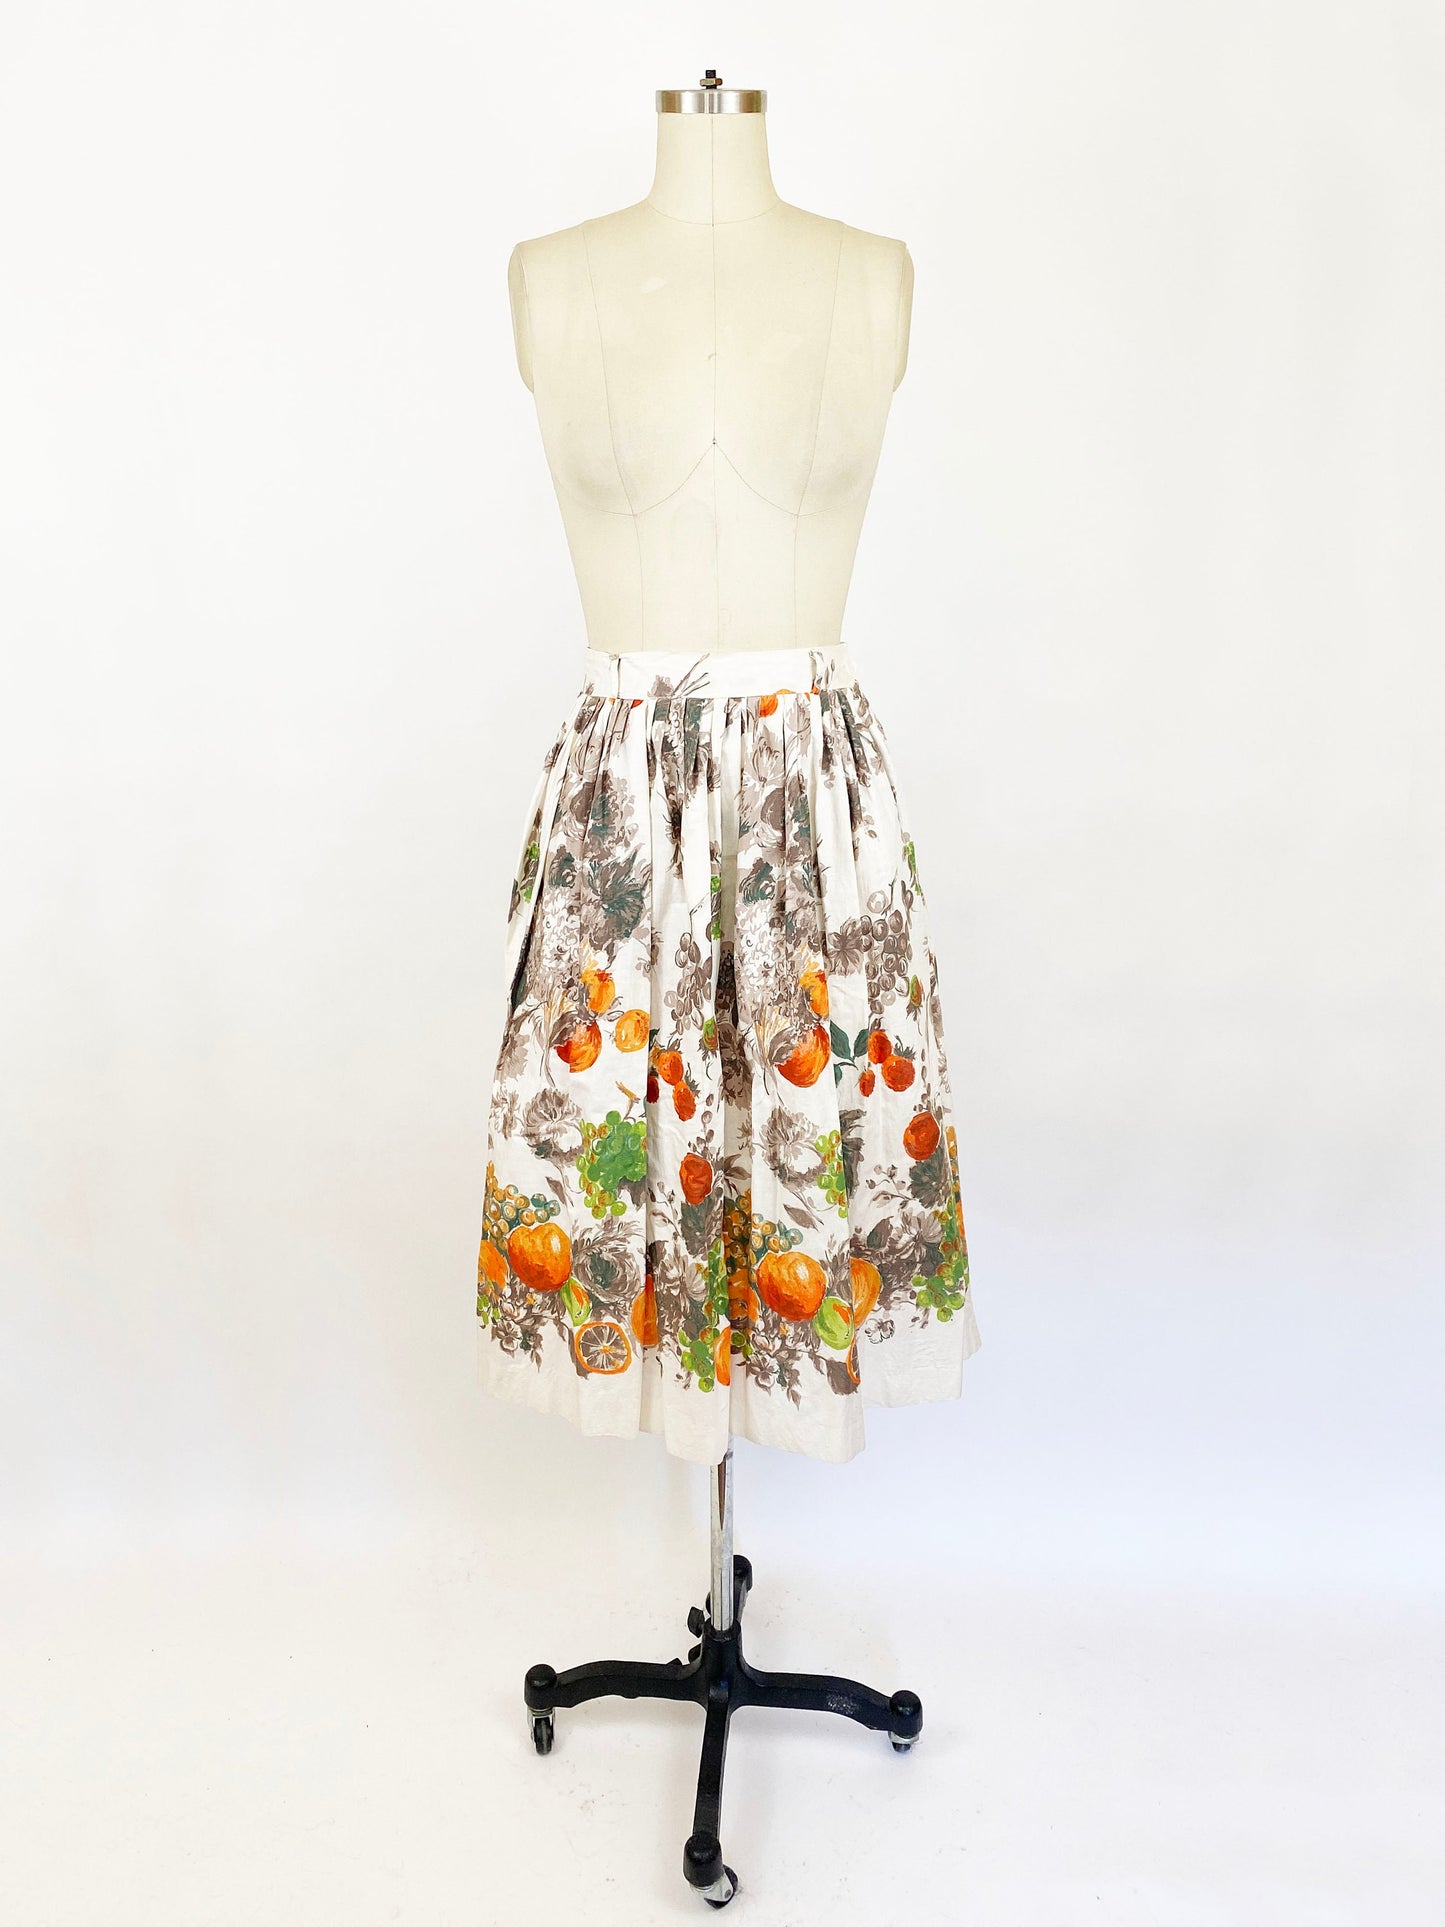 1950's Fruity Novelty Border Print Full Skirt Retro Cotton 50s Pleated White Orange Green Fruit Apple Grapes Strawberries / Small Waist 26"